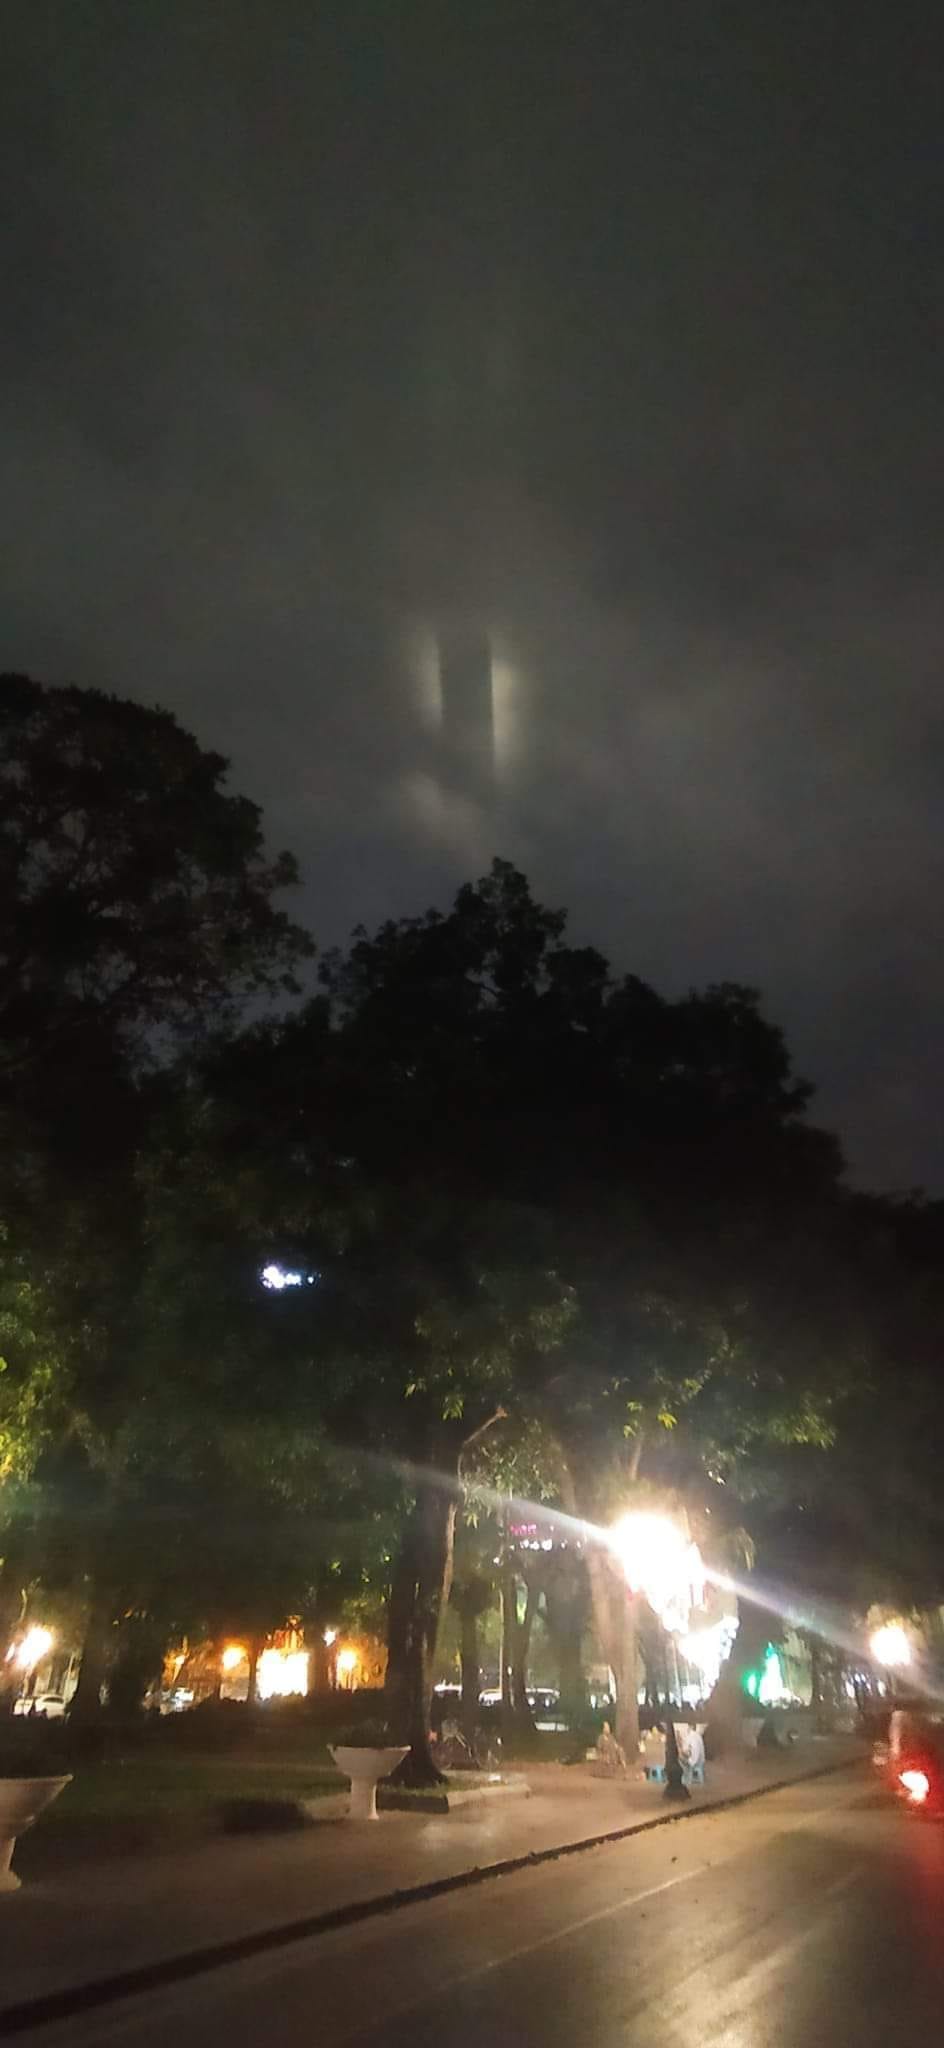 Xôn xao cột sáng kỳ bí xuất hiện trên bầu trời Hà Nội cuối tuần: Giải mã hiện tượng- Ảnh 1.